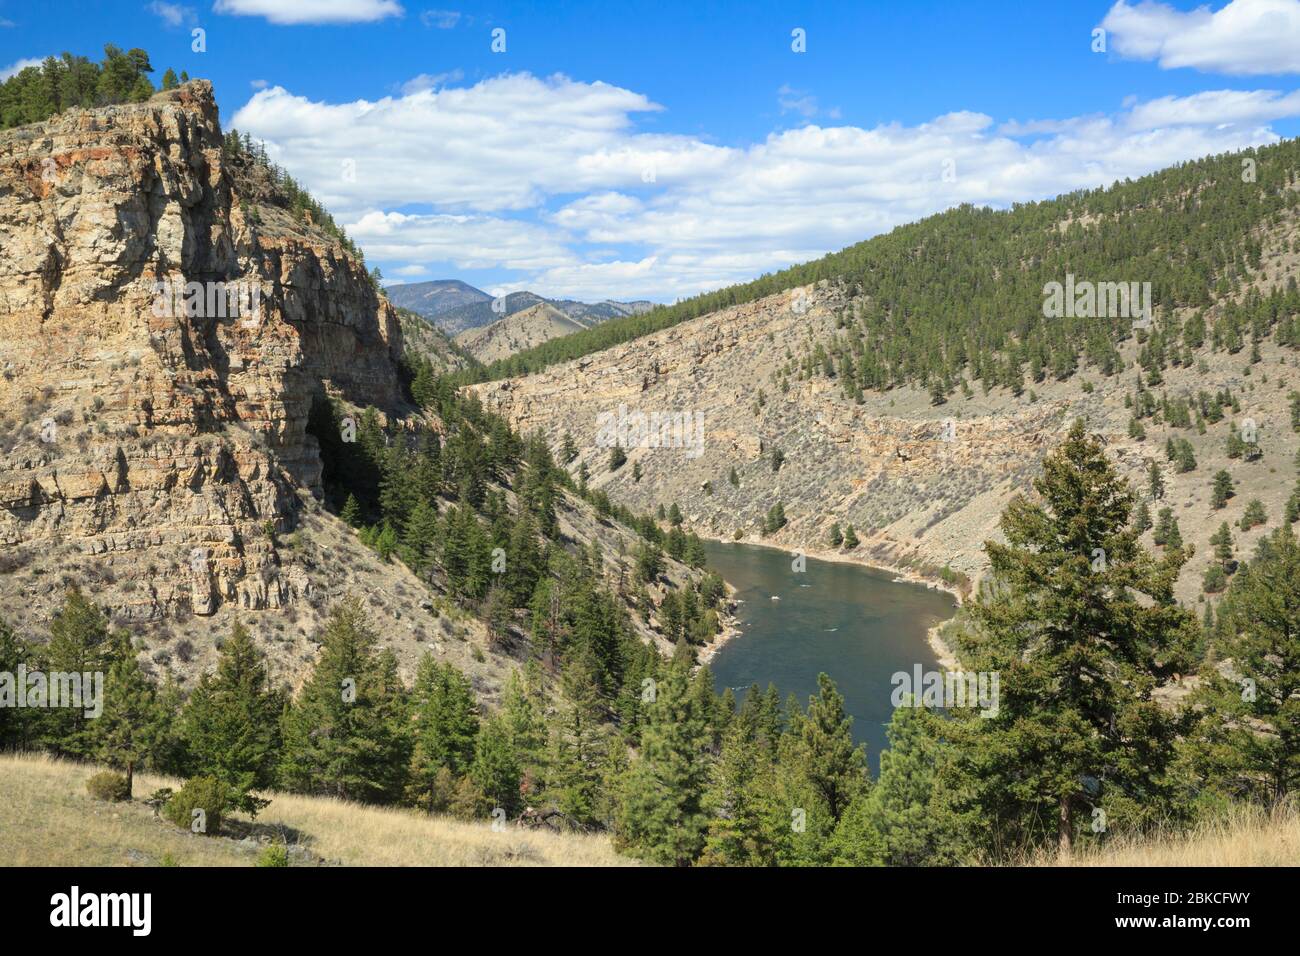 Rivière Missouri dans un canyon en dessous du barrage hauser près de Helena, Montana Banque D'Images